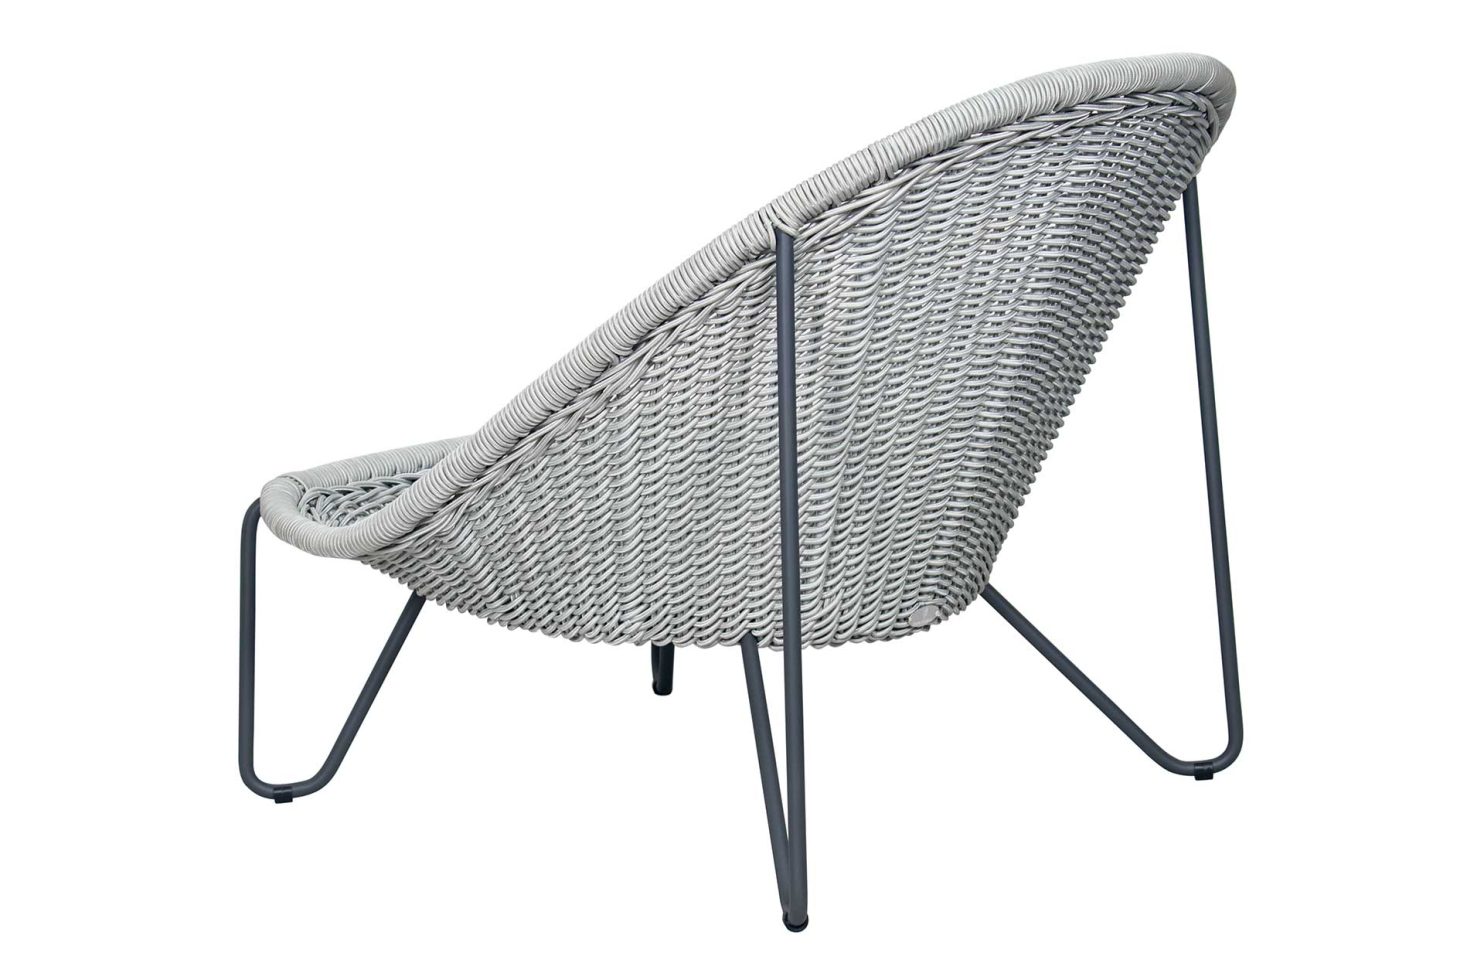 arch azores chair A620600424 no cushion 3Q back web